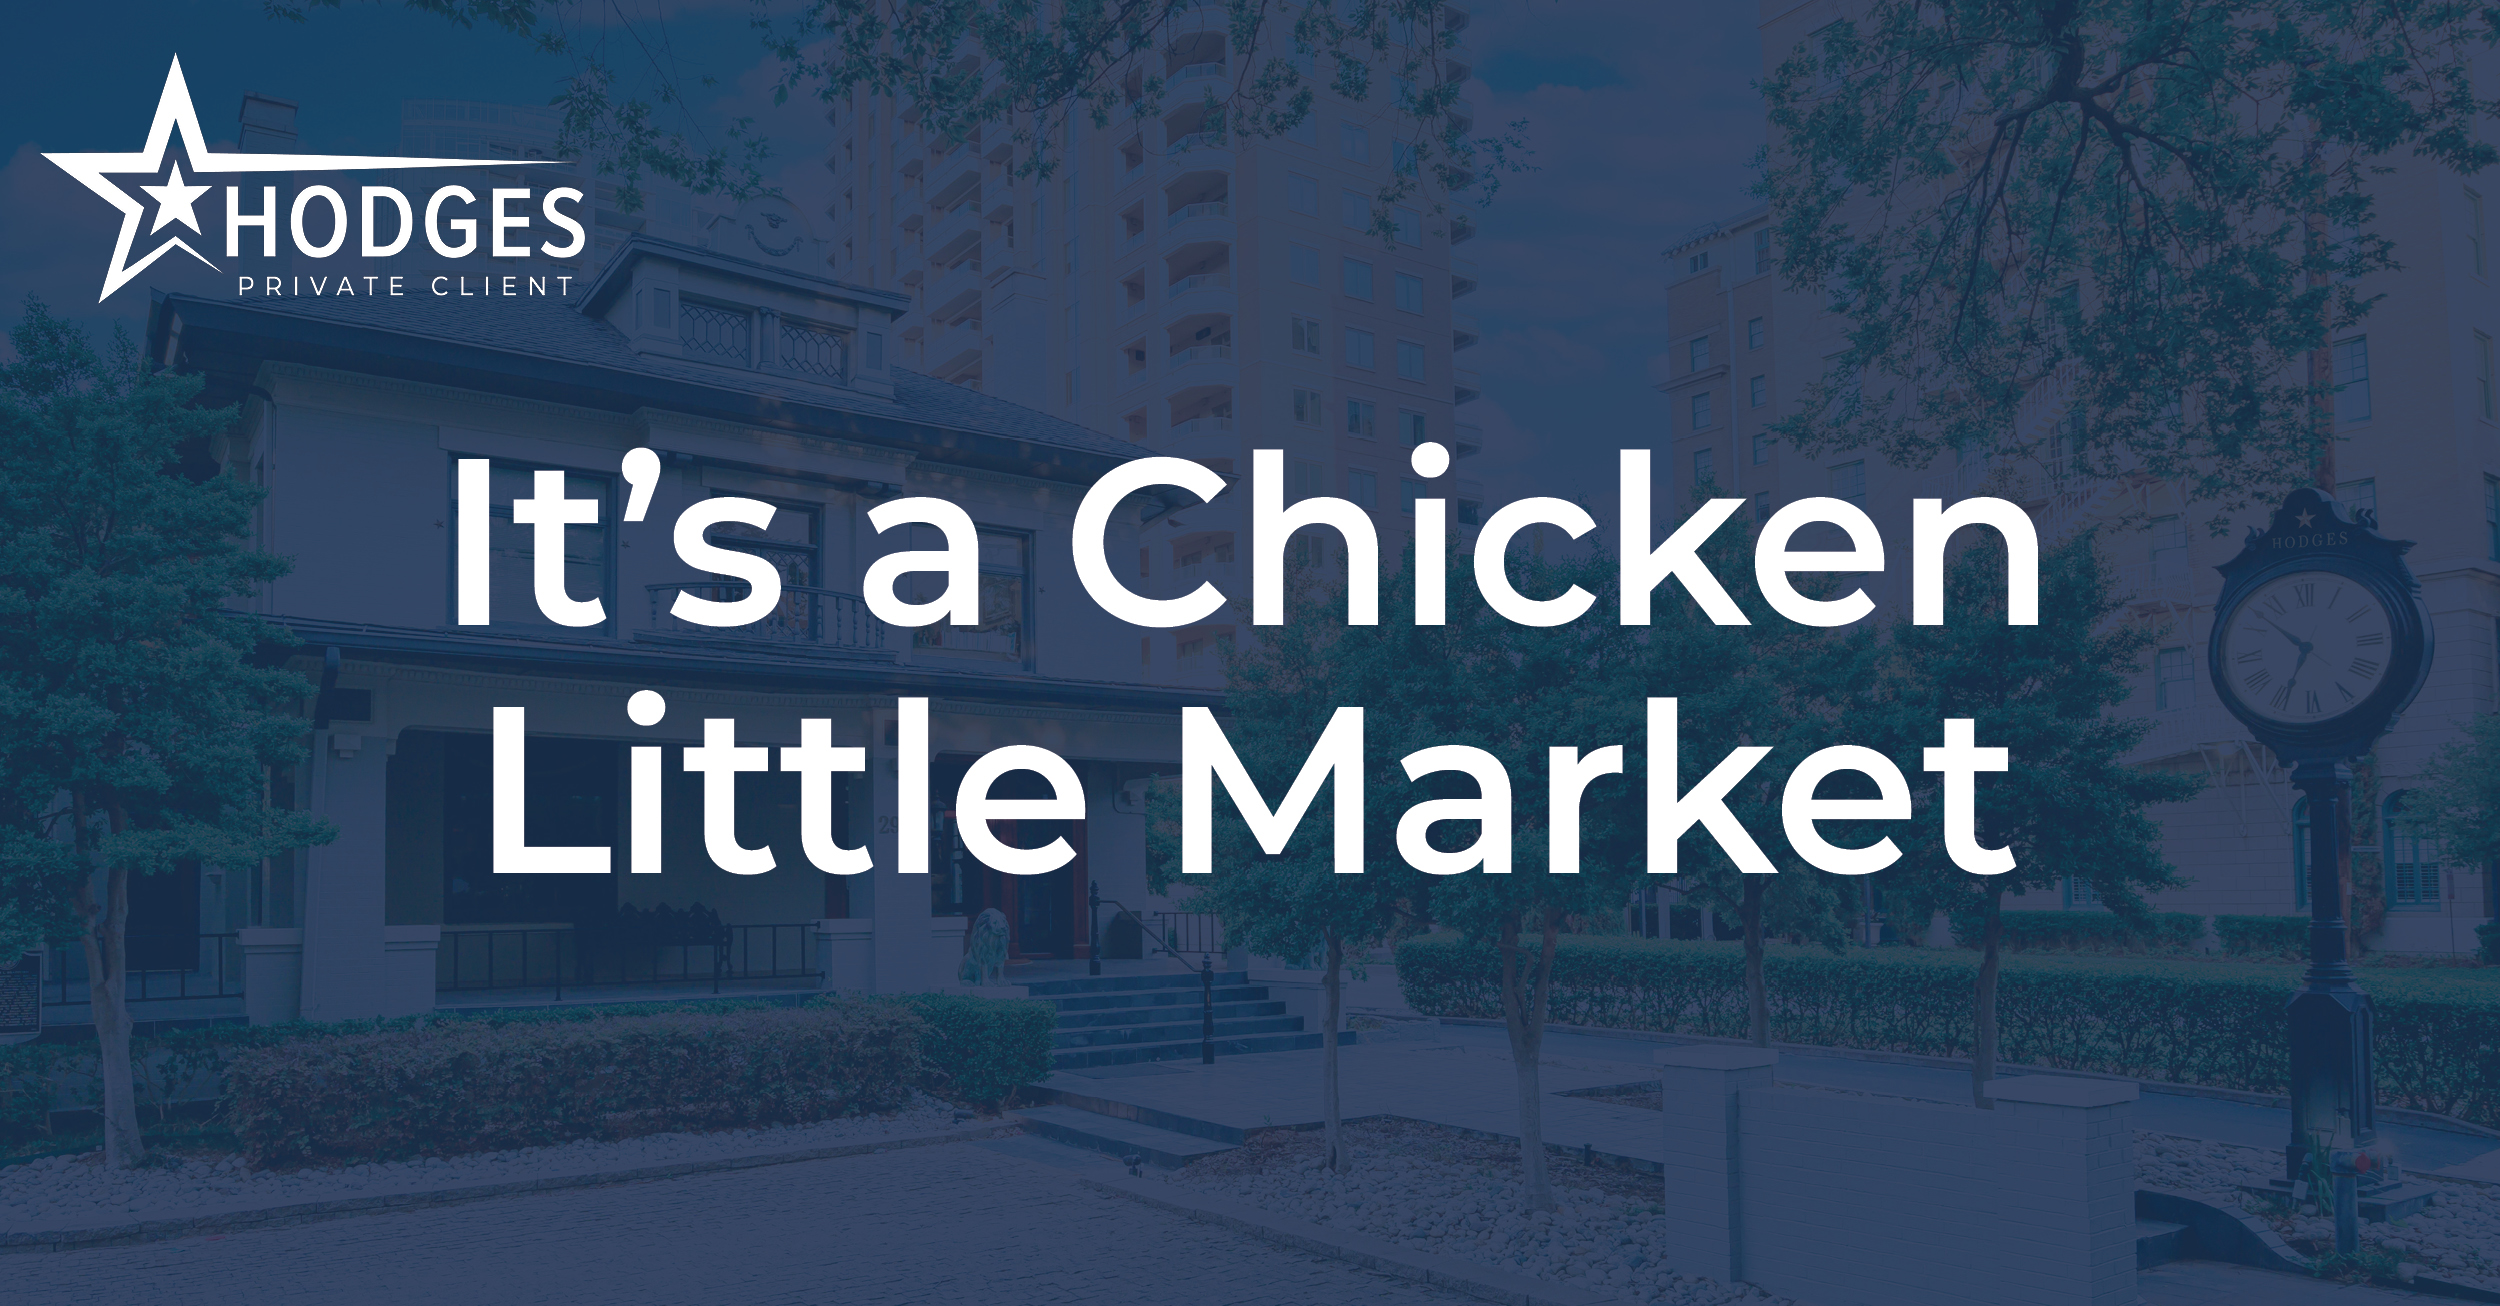 It's a Chicken Little Market